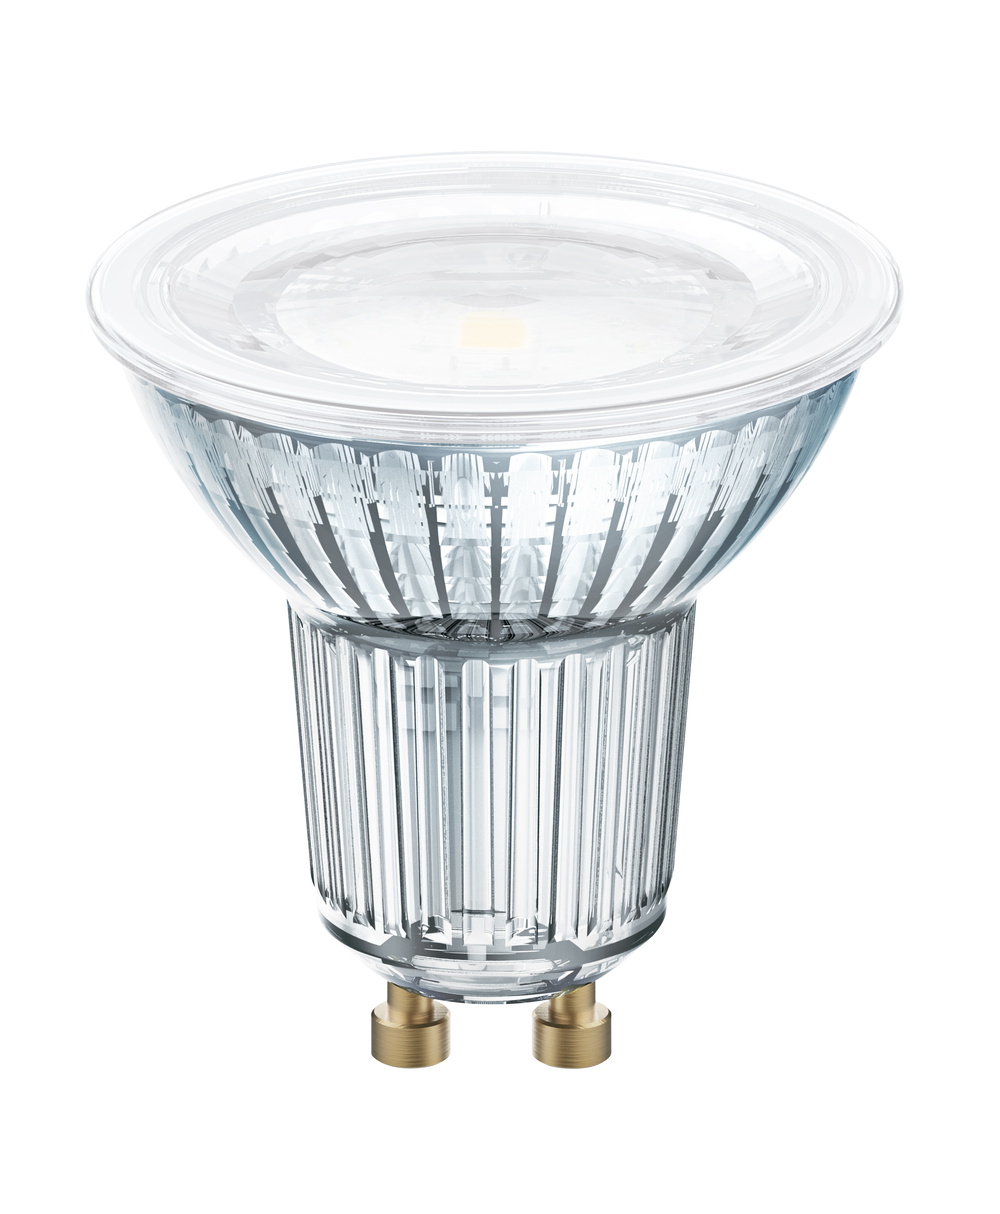 Ledvance LED lamp LED PAR16 DIM P 7.9W 940 GU10 – 4099854059131 – replacement for 51 W - 4099854059131